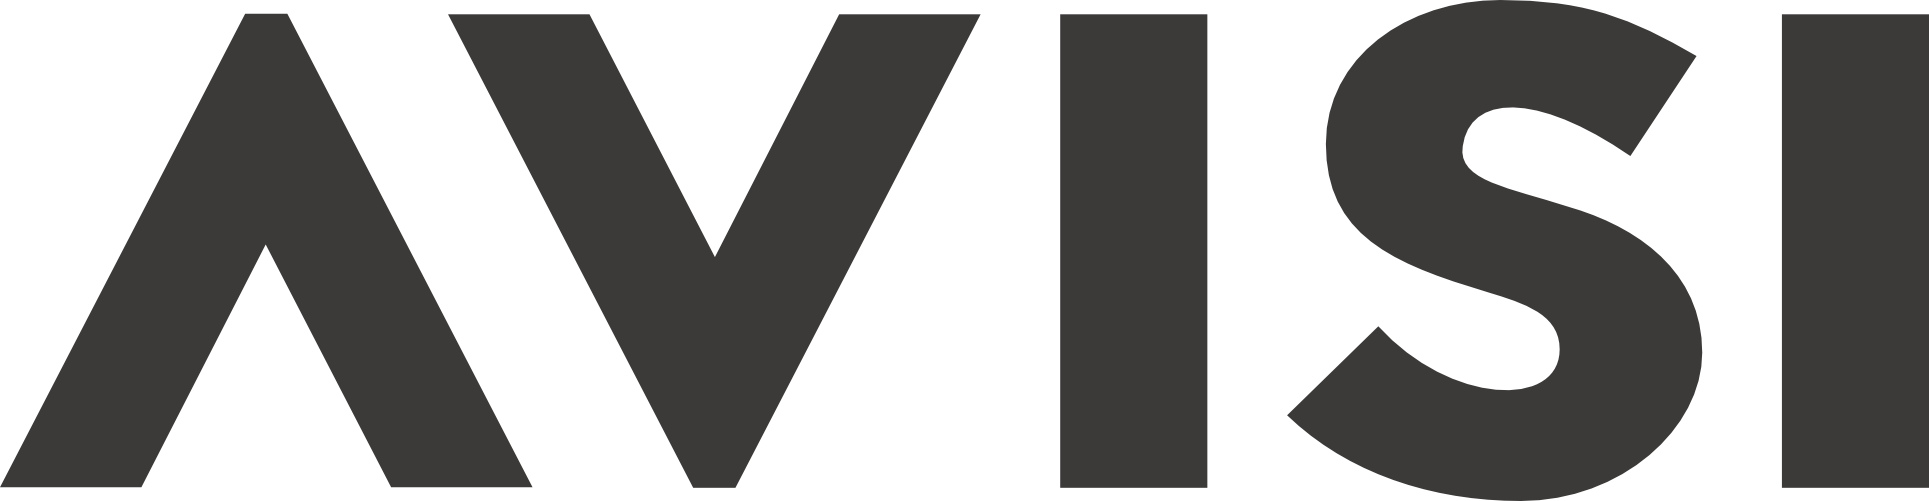 Logotipo da Avisi